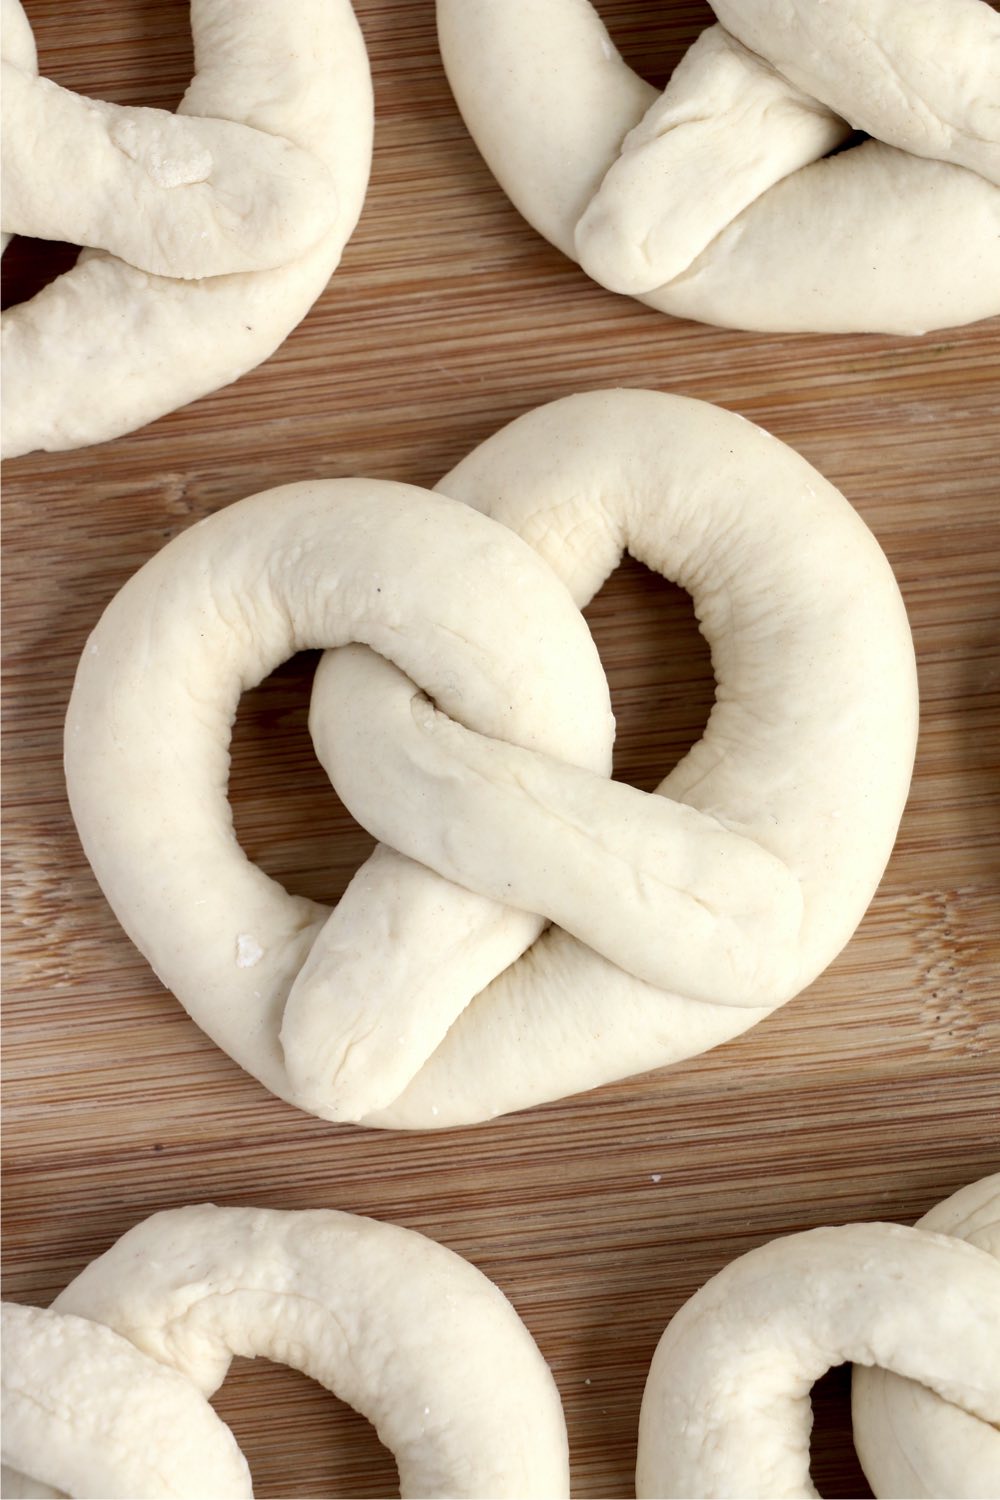 dough shaped into a pretzel